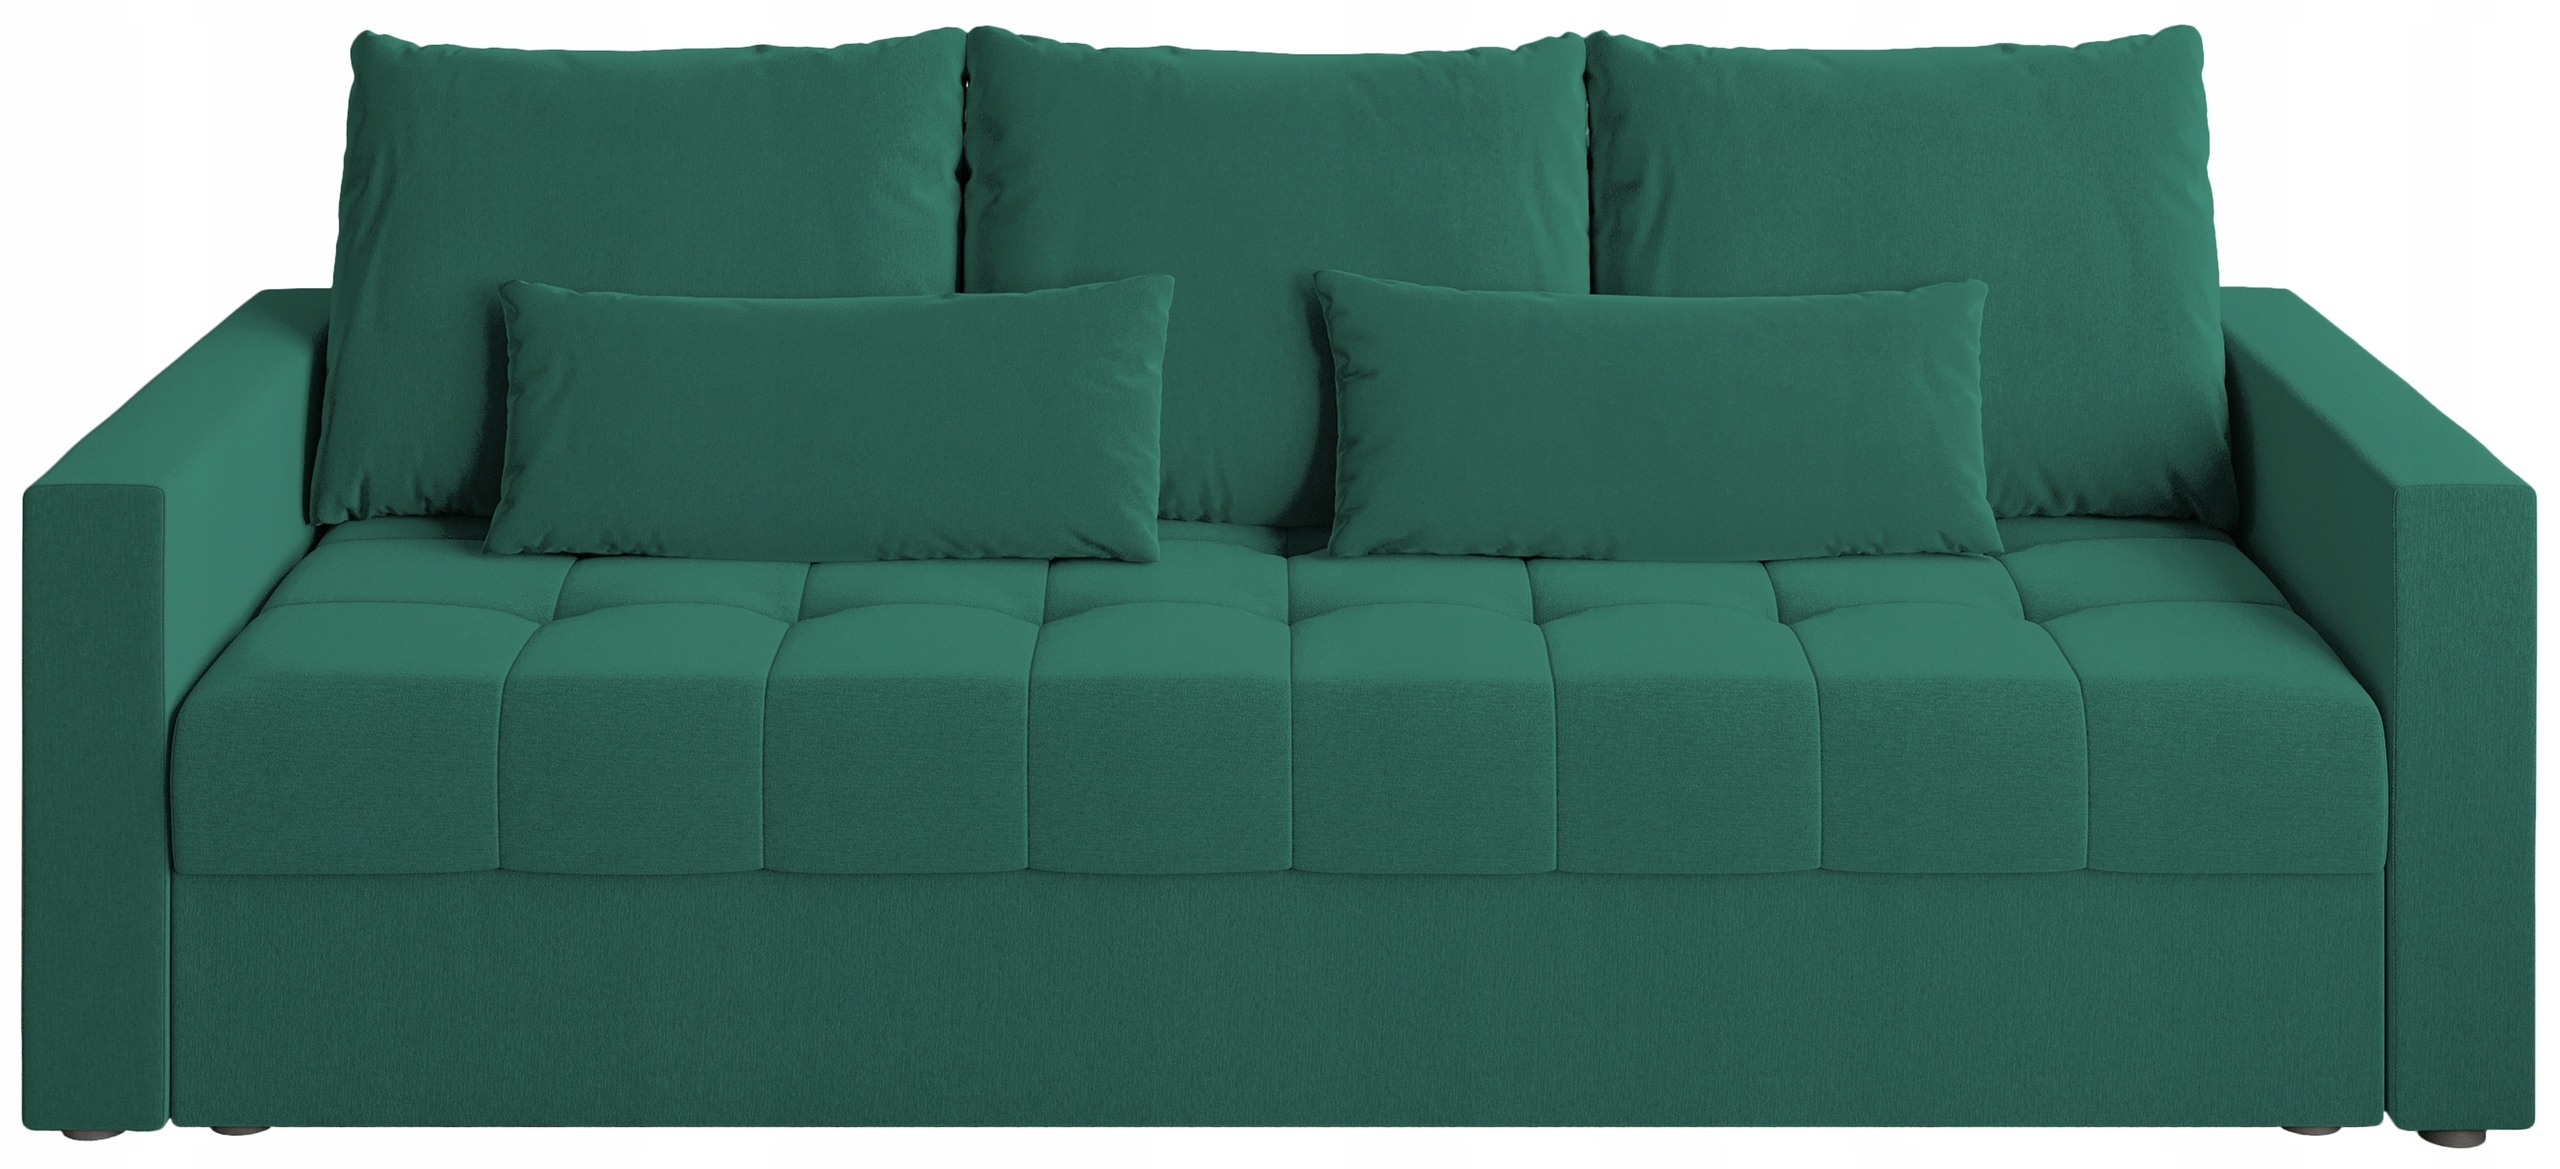 Sofa rozkładana z funkcją spania HOT pojemnik na pościel butelkowa zieleń